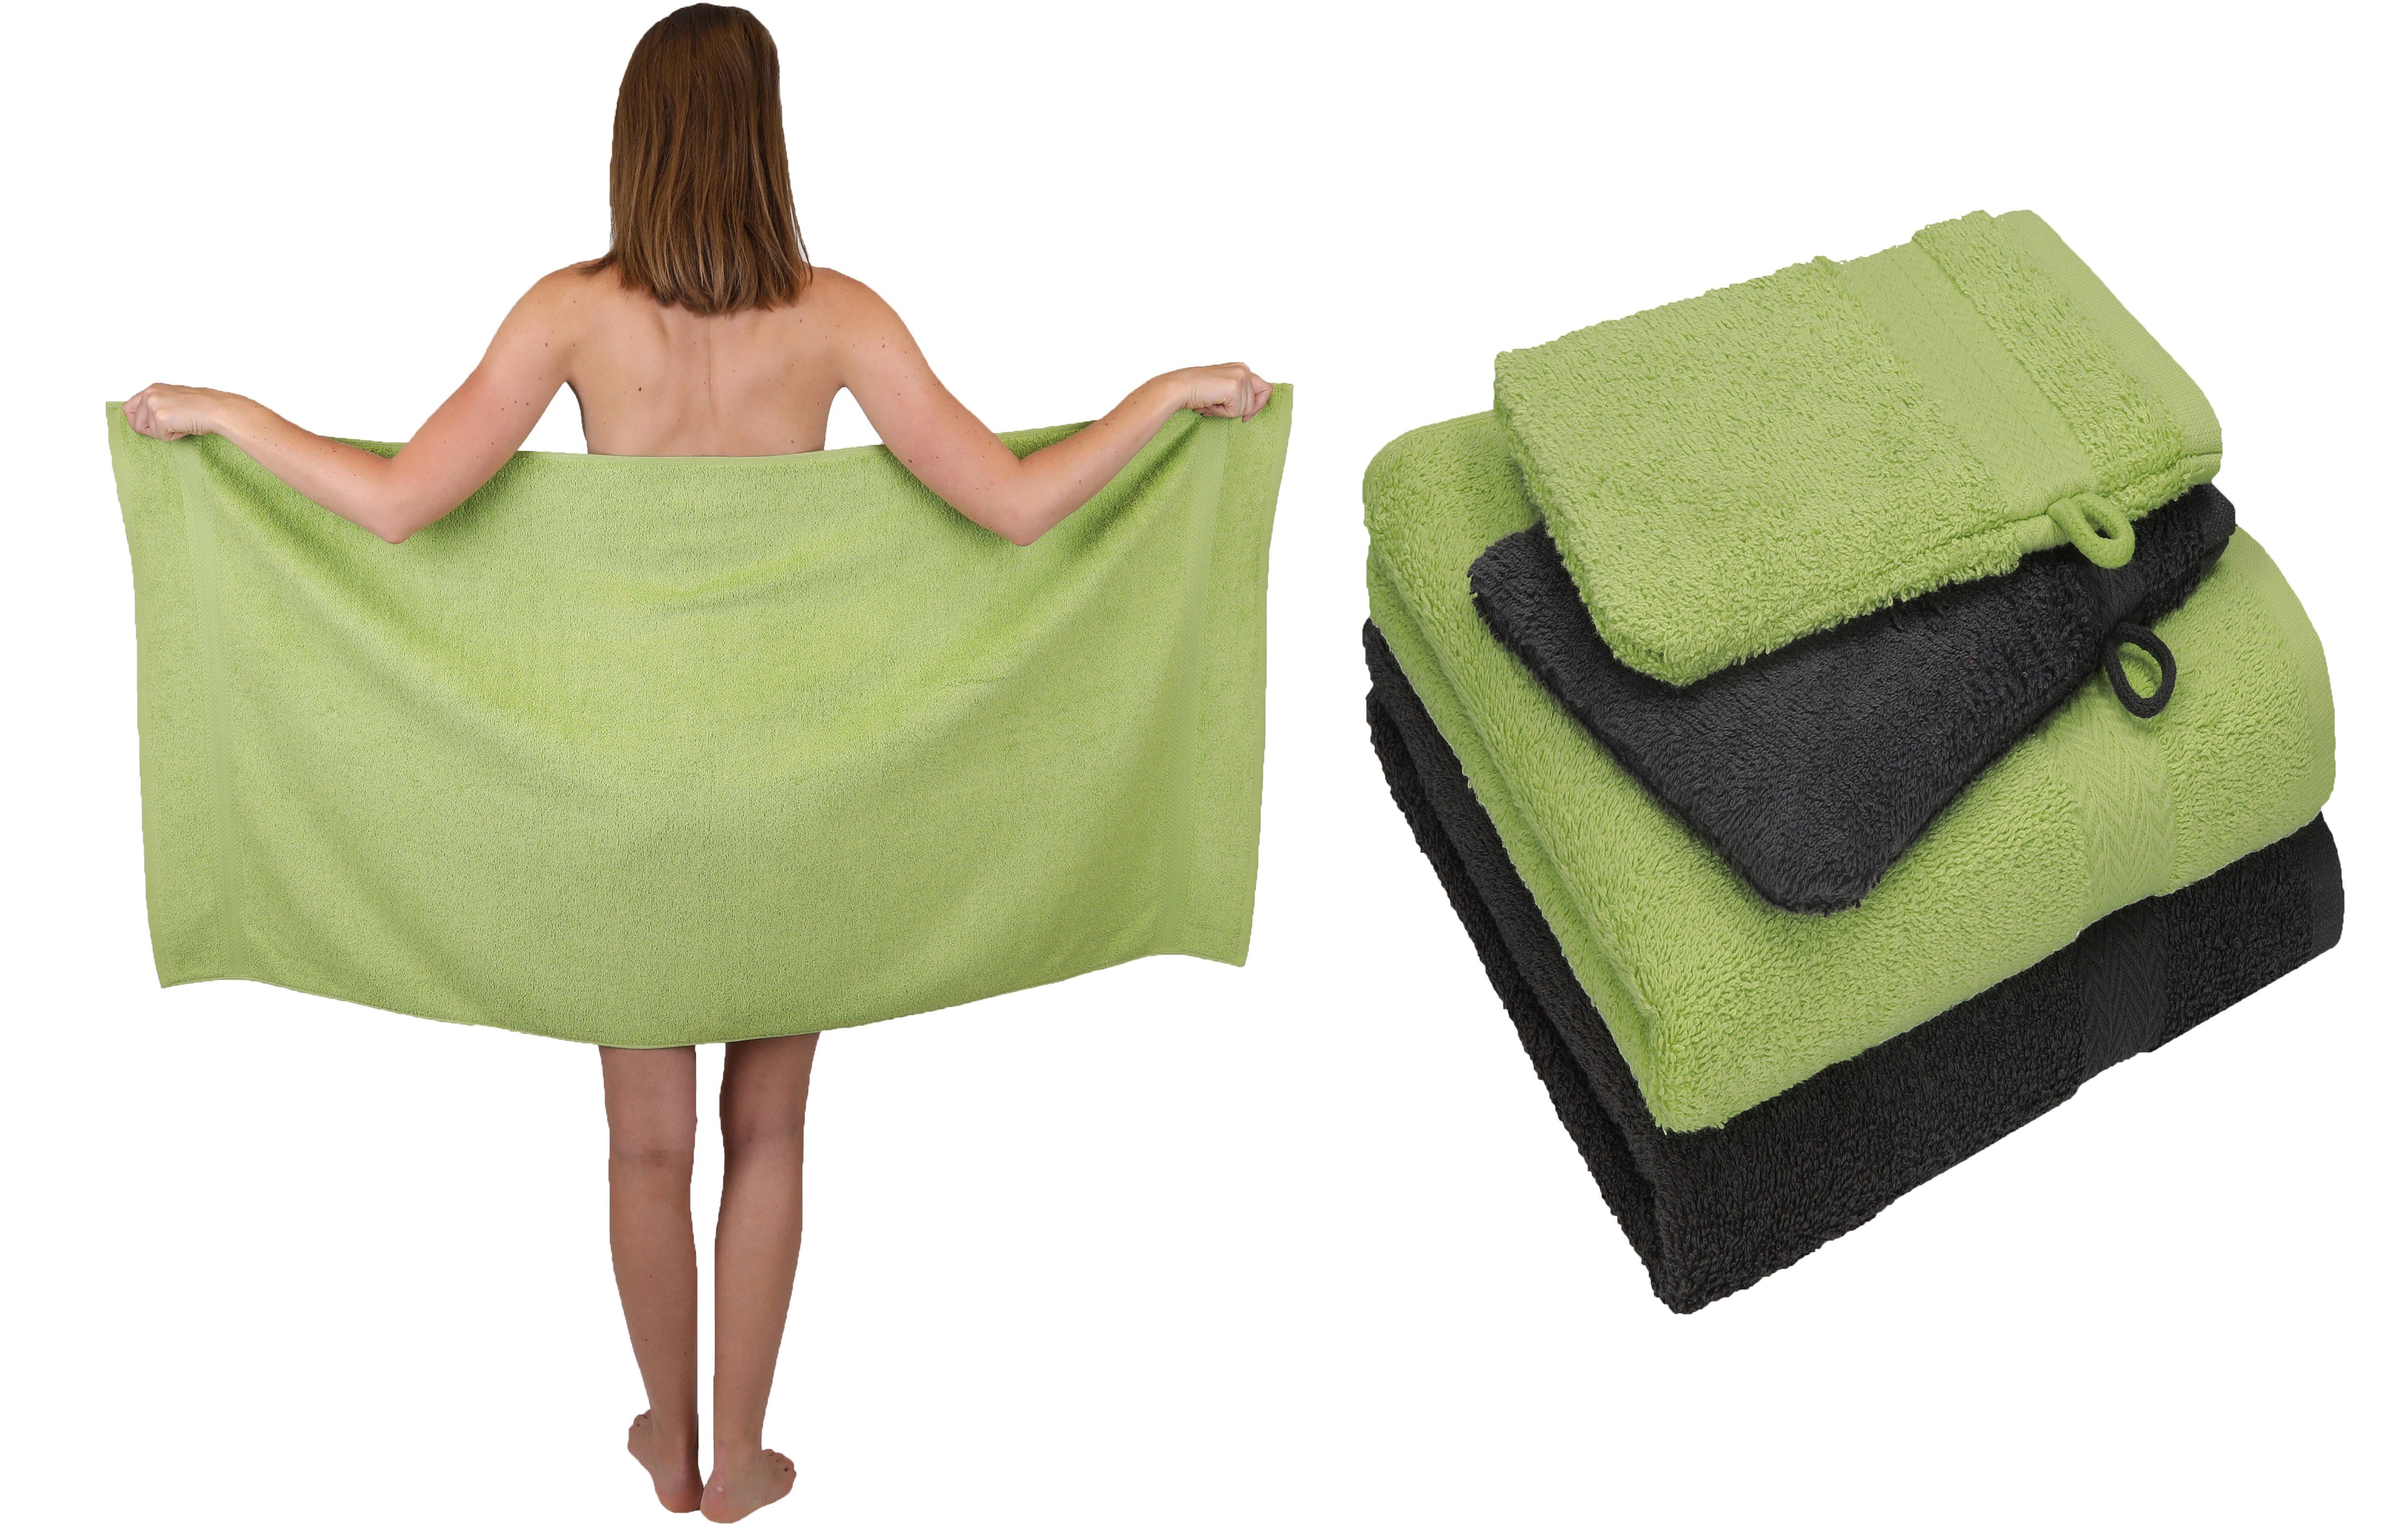 Betz Handtuch Set 5 TLG. Handtuch Set Single Pack 100% Baumwolle 1 Duschtuch 2 Handtücher 2 Waschhandschuhe, 100% Baumwolle avocadogrün-graphit grau